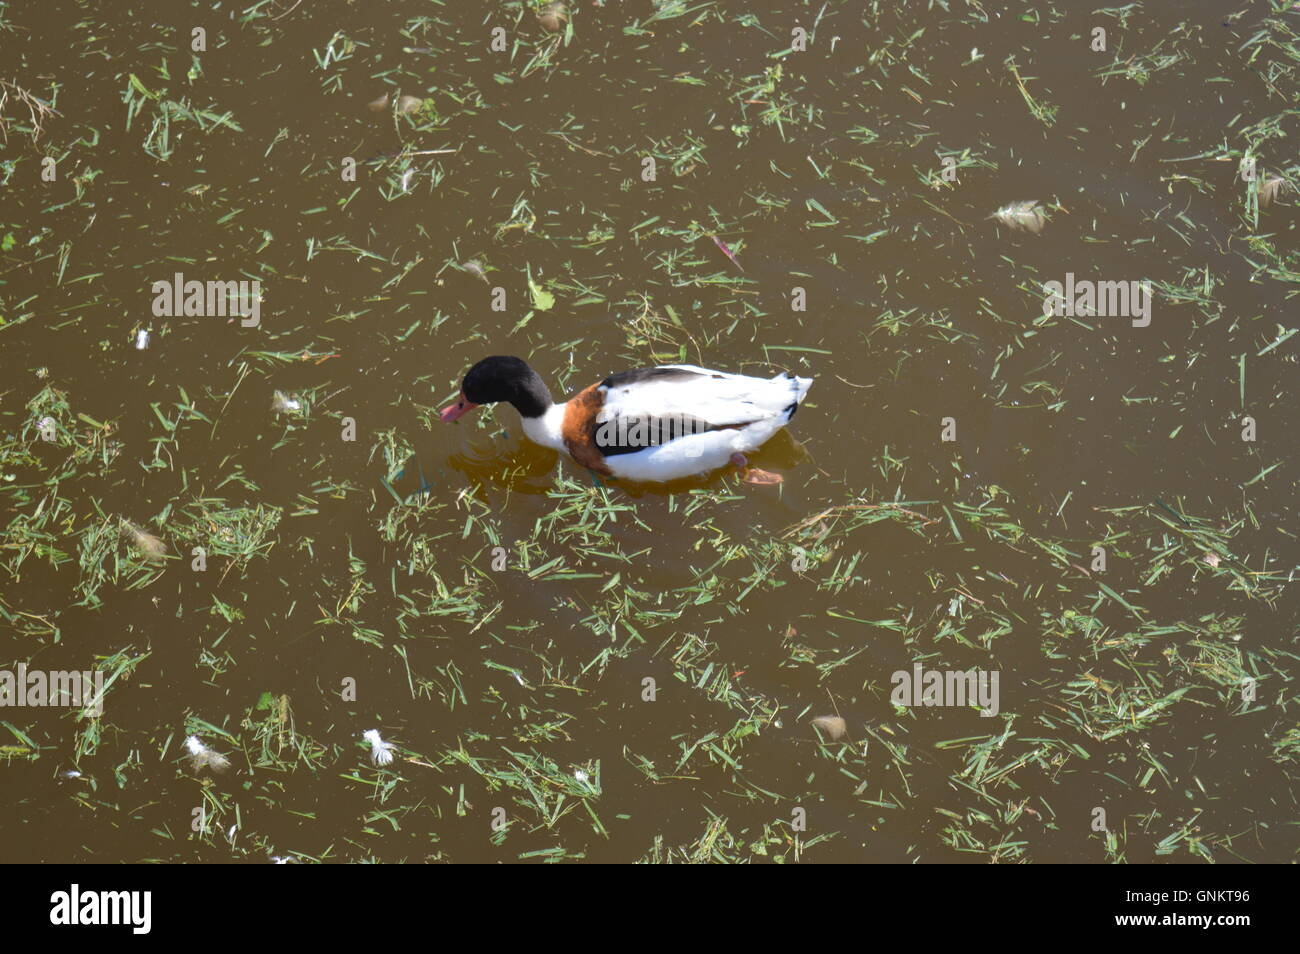 Un canard sauvage la natation dans un lac Banque D'Images